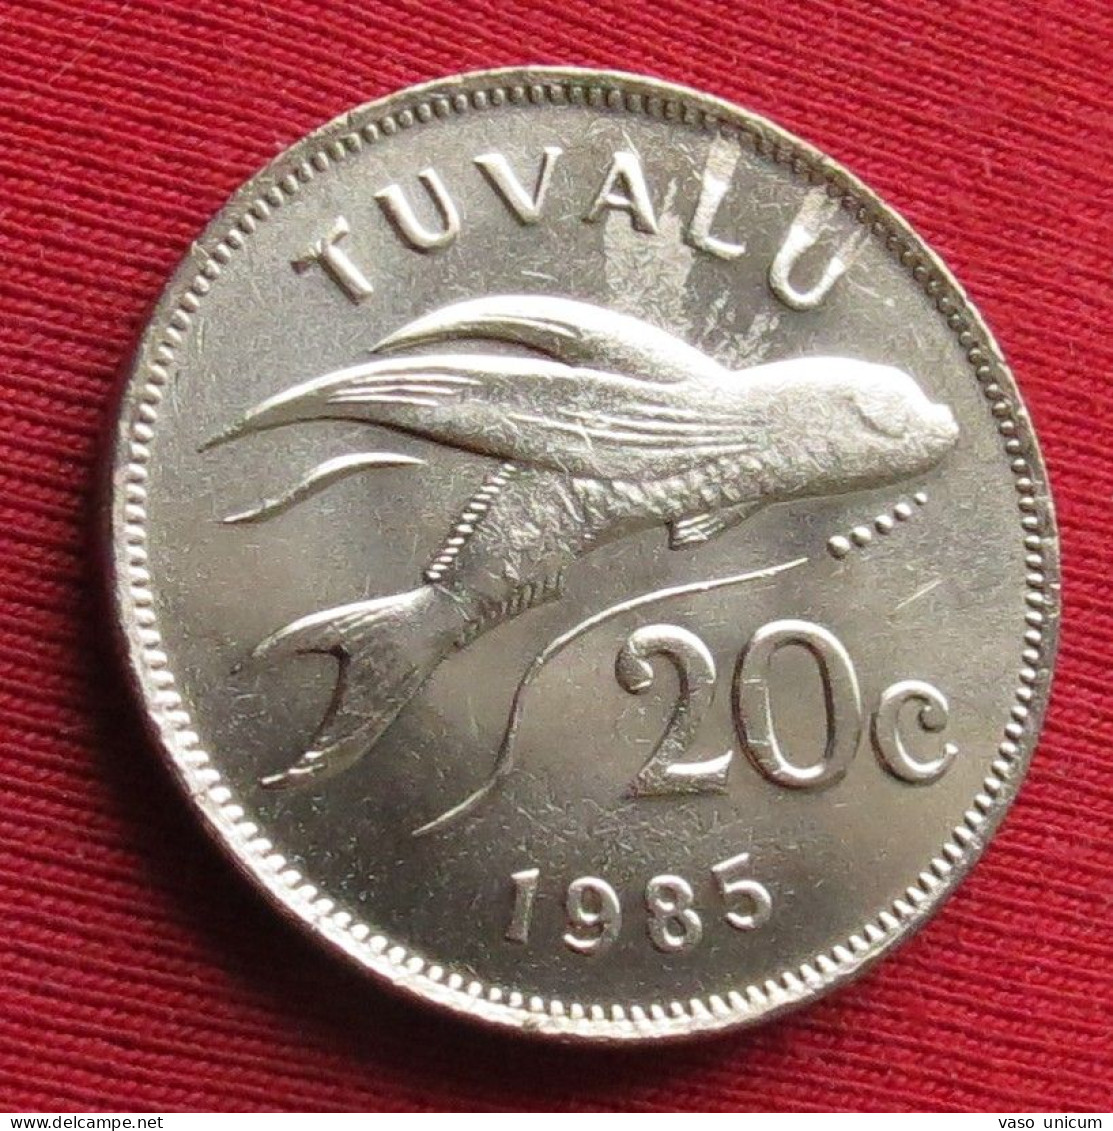 Tuvalu 20 Cents 1985 Fish  UNC - Tuvalu